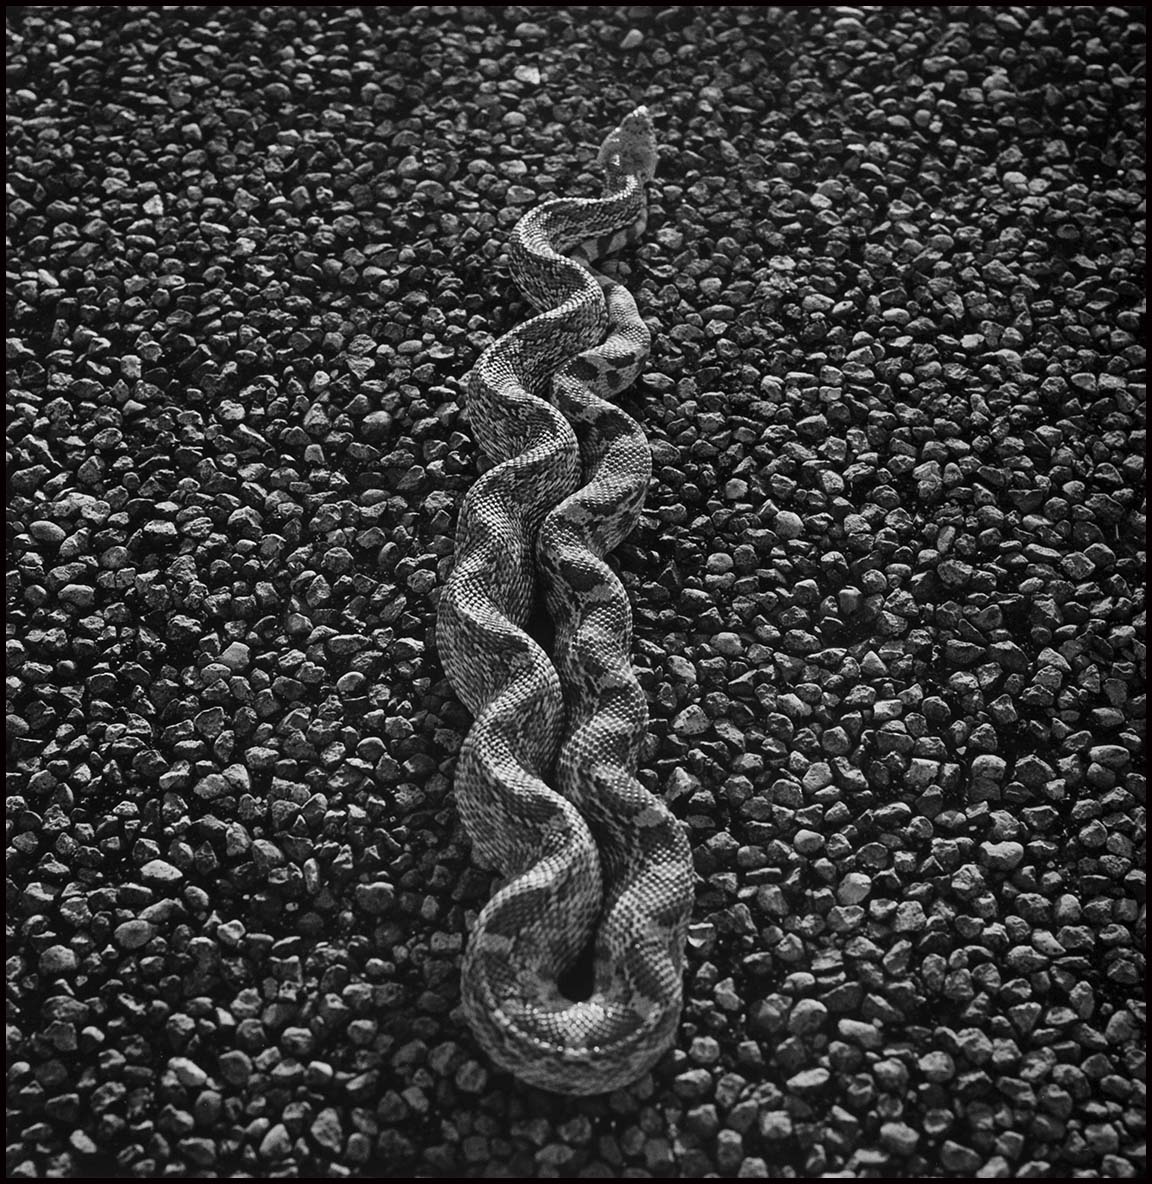 Bull Snake on 385_© James H. Evans